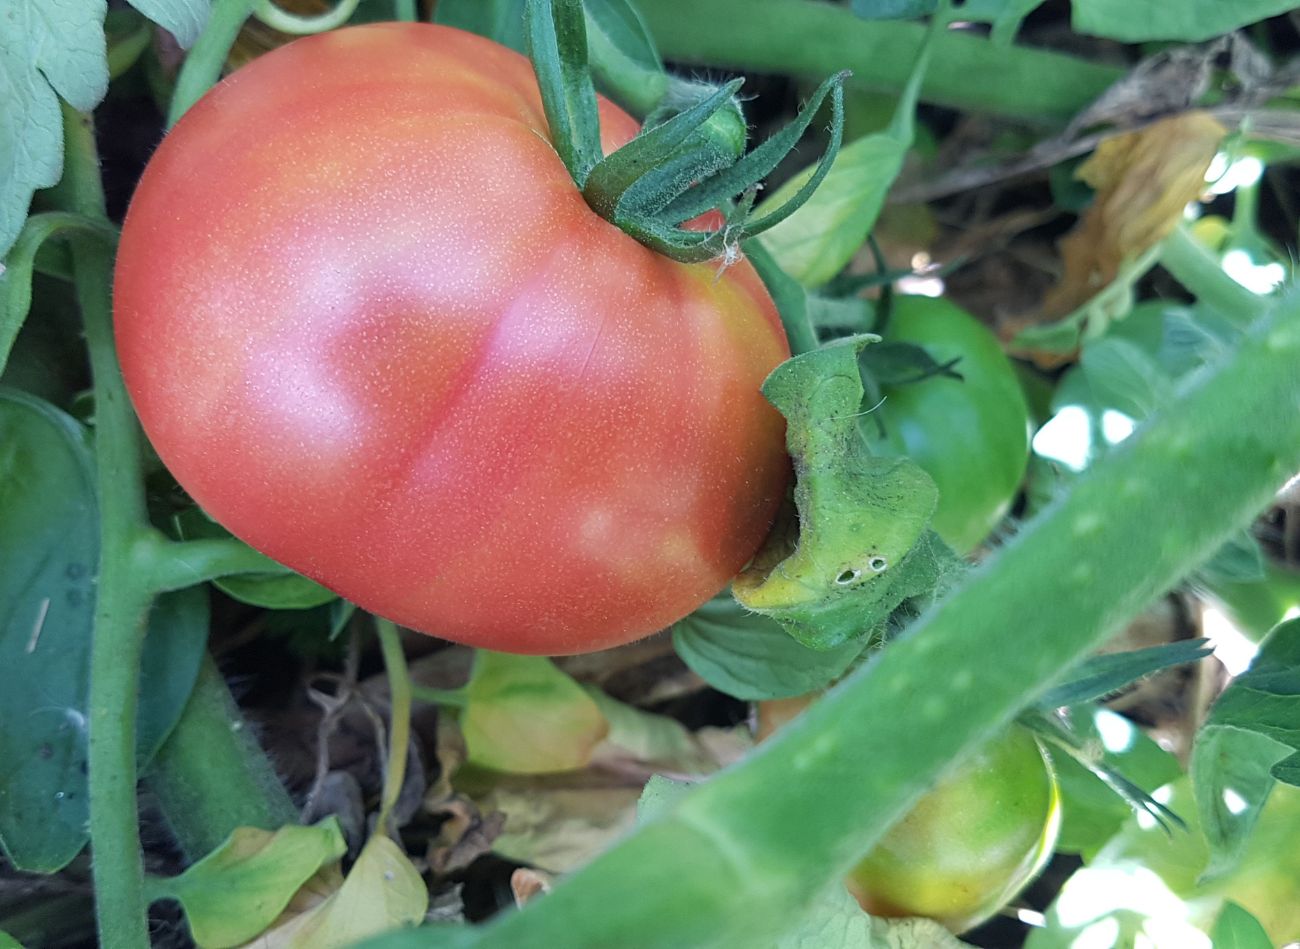  Leżące pomidory hitem wśród ogrodników. Zapewniają obfite i smaczne plony